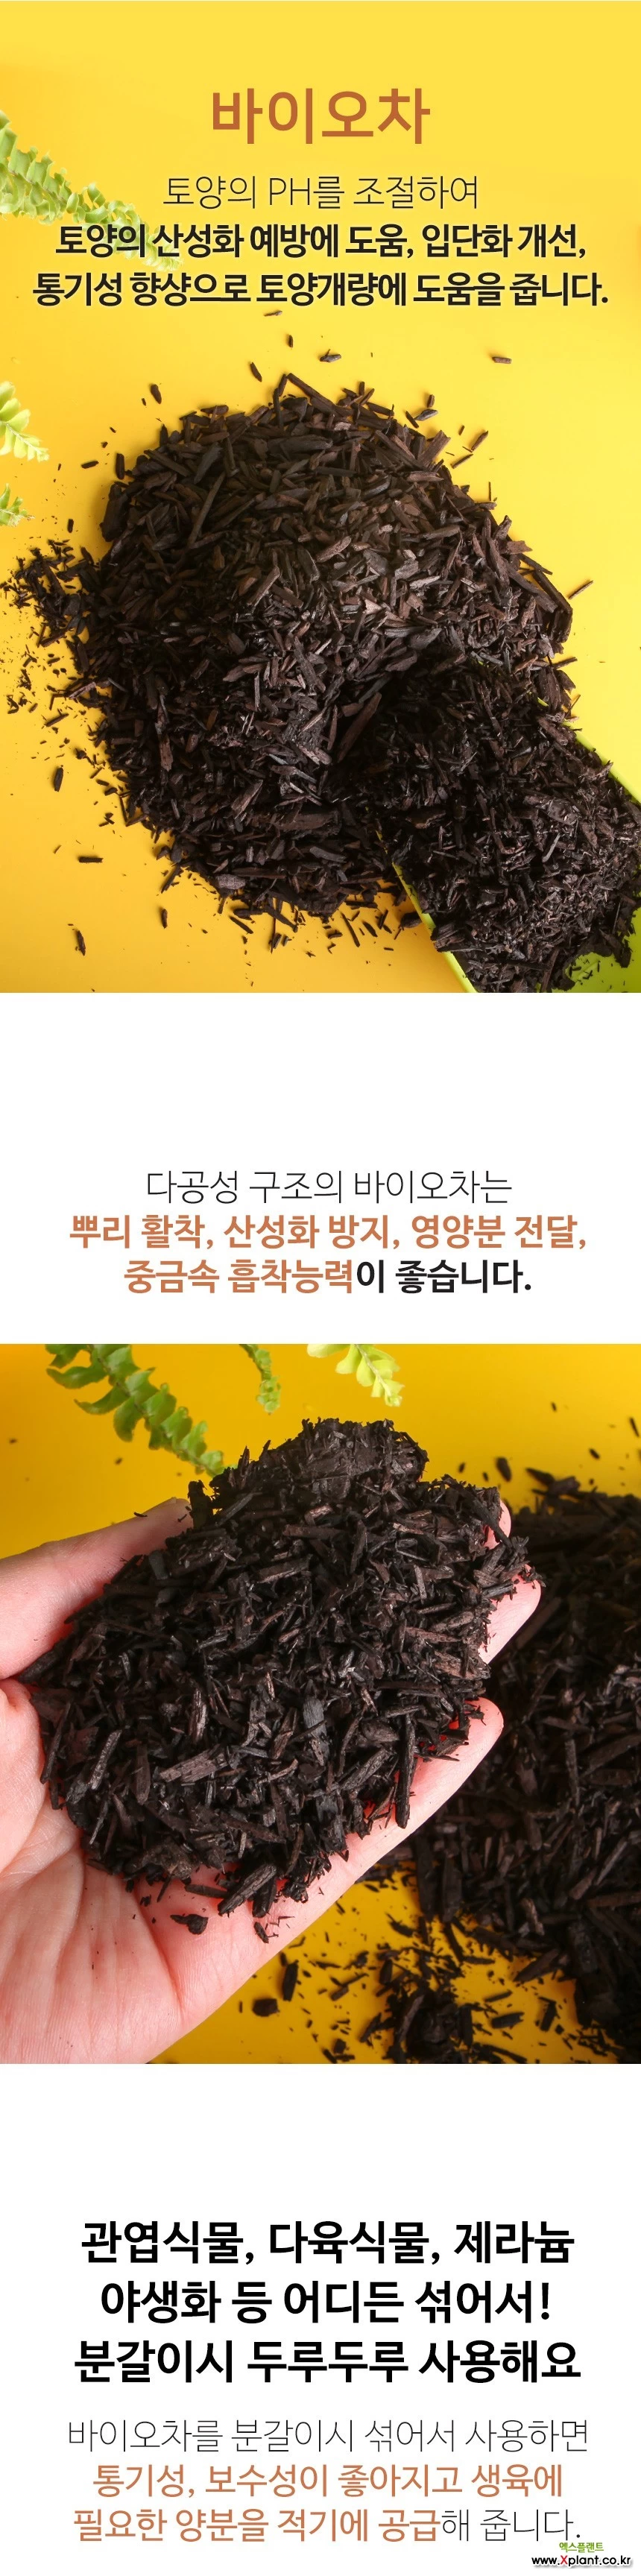 유기 바이오차10kg 훈탄 토양개량제 숯 영양제 비료 분갈이흙